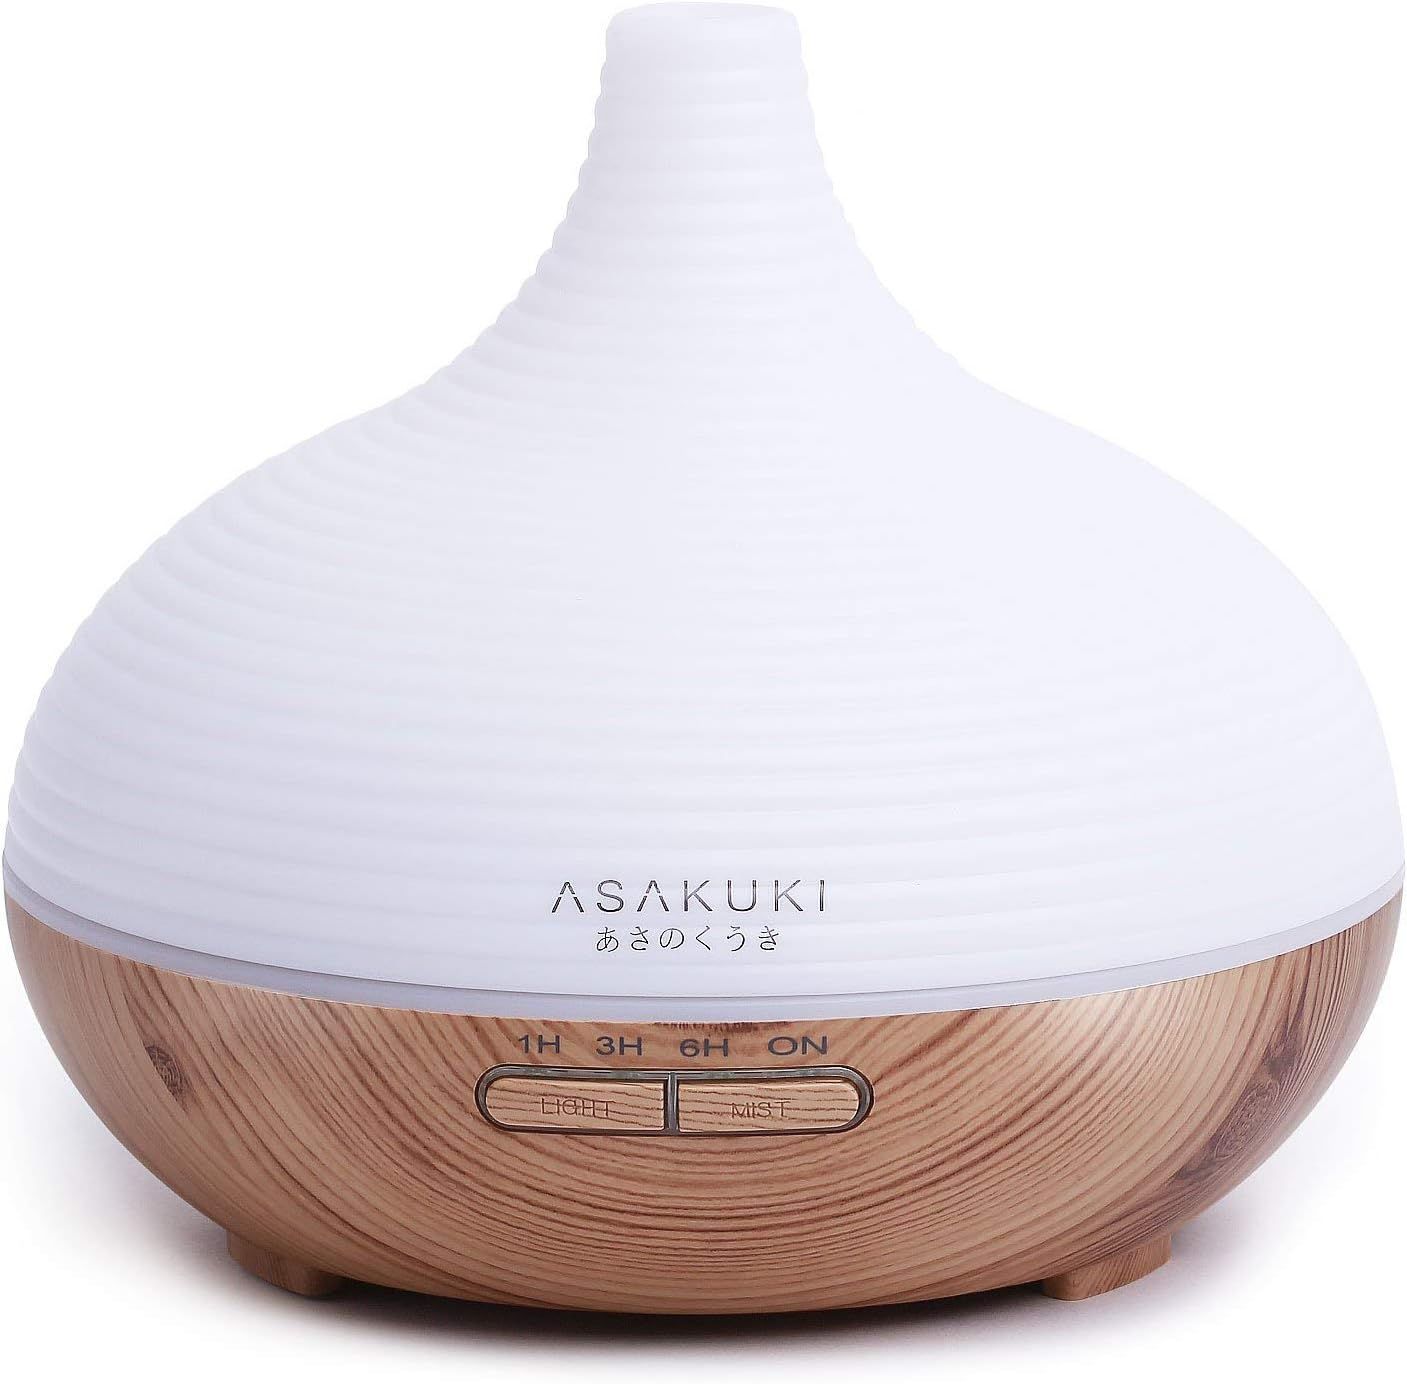 ASAKUKI 300ML Premium, Essential Oil Diffuser, Quiet 5-in-1 Humidifier, Natural Home Fragrance Di... | Amazon (US)